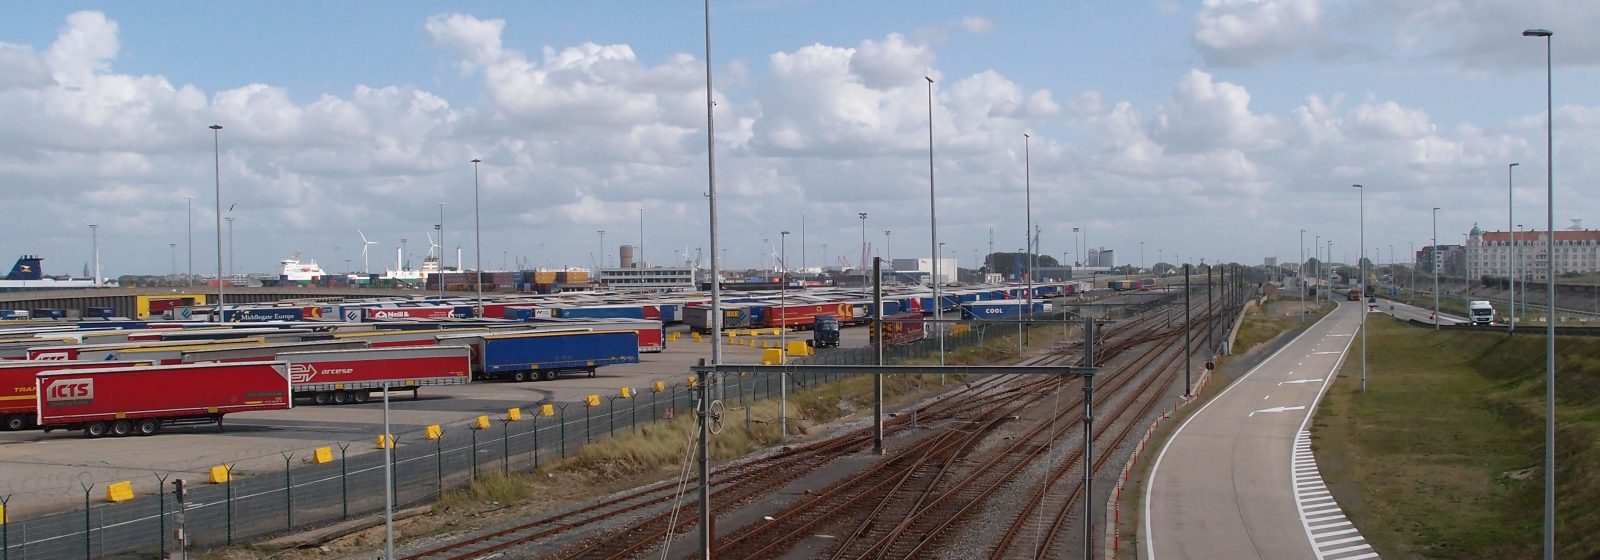 Terminal P&O Ferries in voorhaven Zeebrugge